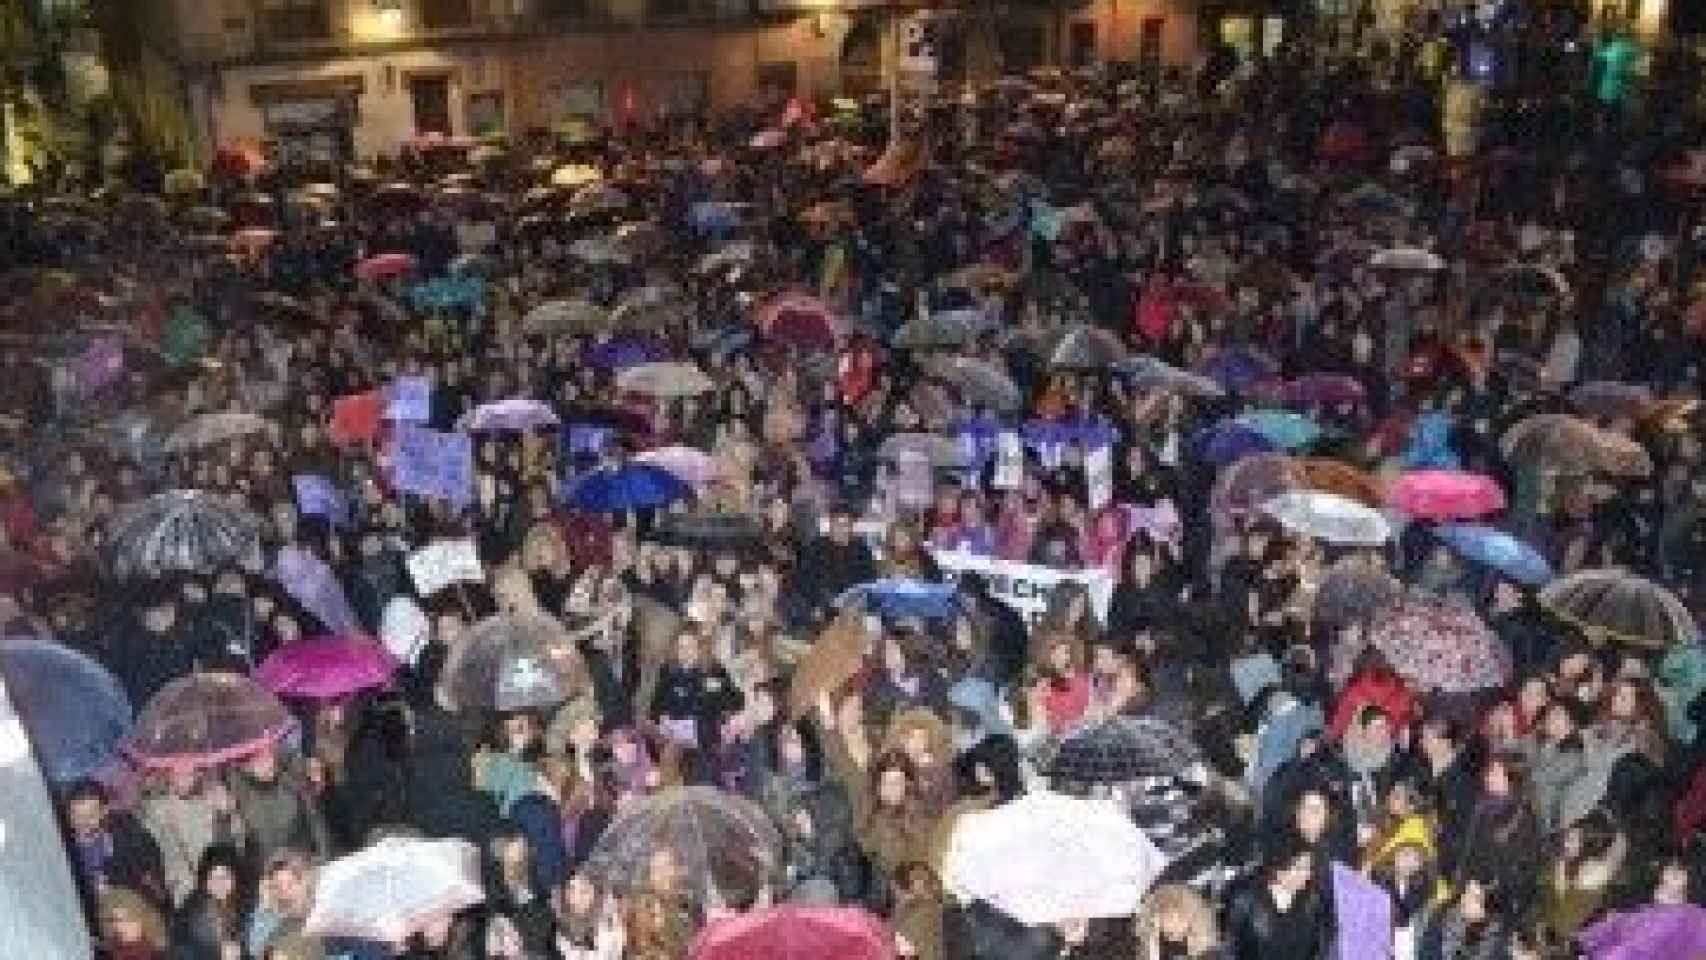 Manifestación 8M Día de la Mujer Valladolid